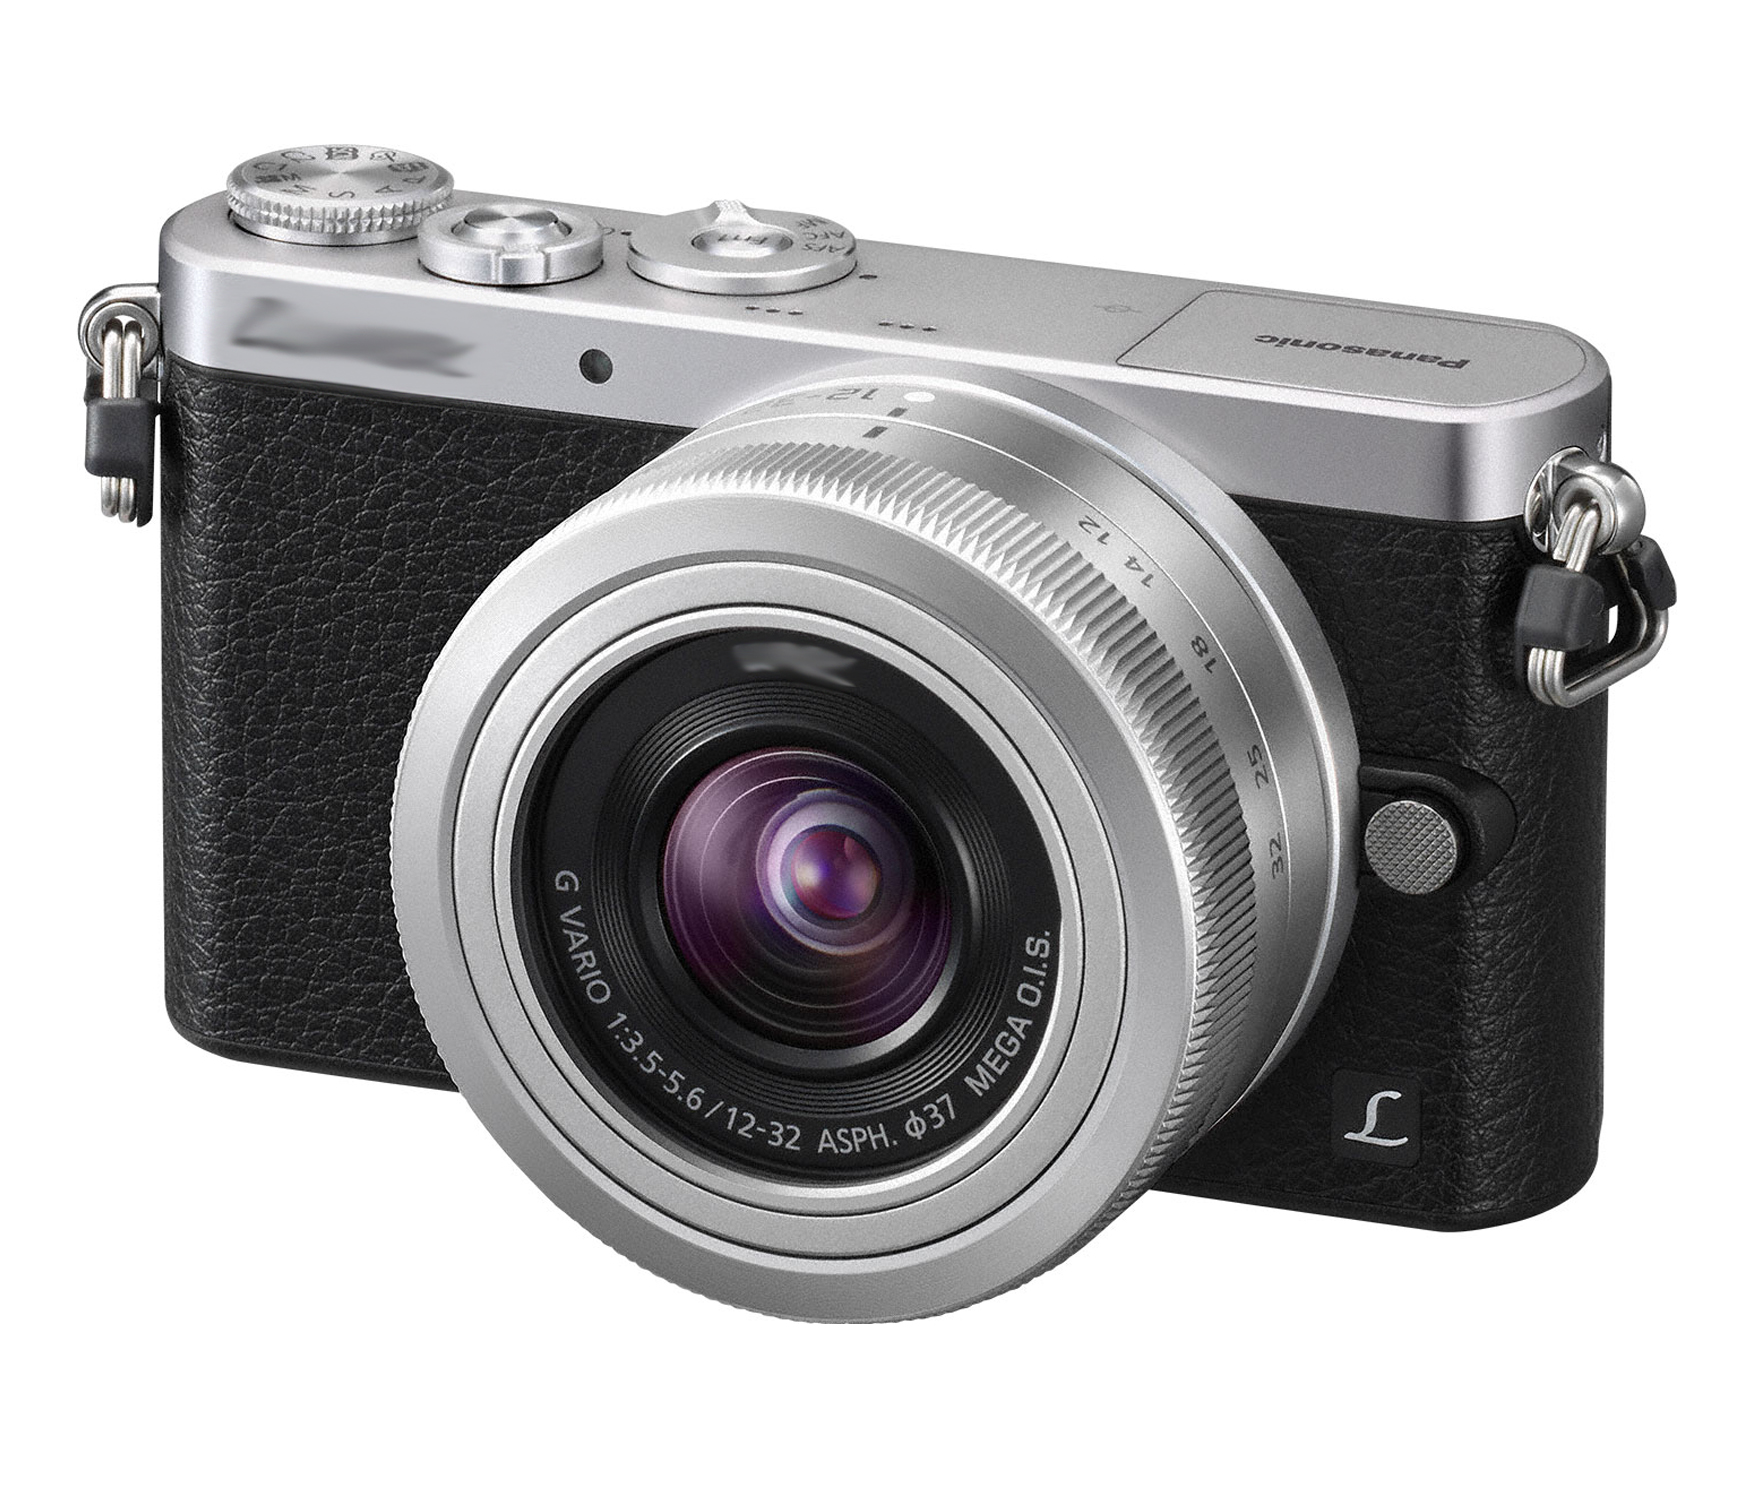 Choisir un appareil photo compact ou bridge expert : les critères